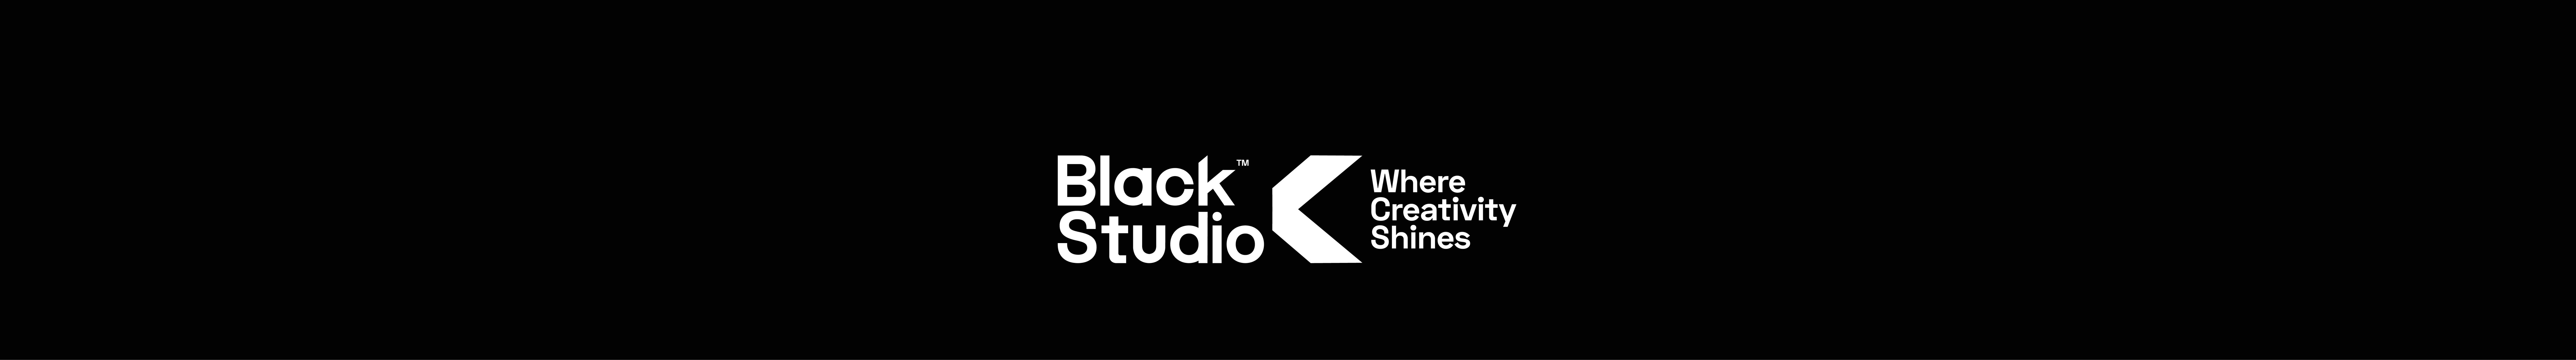 Black Studio™ 的個人檔案橫幅